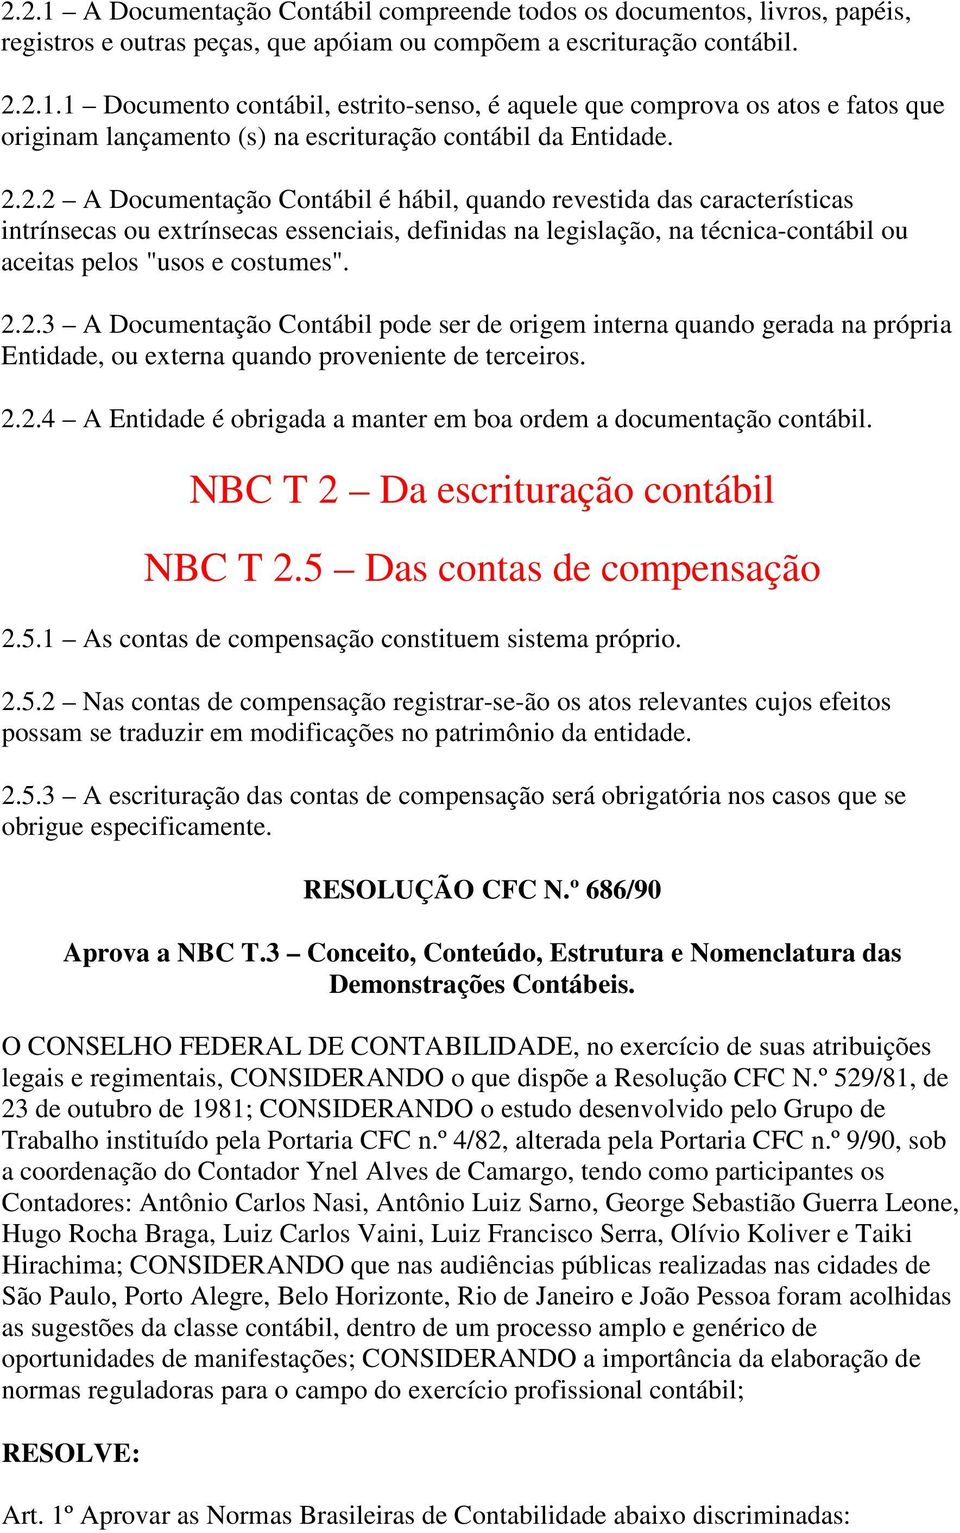 2.2.4 A Entidade é obrigada a manter em boa ordem a documentação contábil. NBC T 2 Da escrituração contábil NBC T 2.5 Das contas de compensação 2.5.1 As contas de compensação constituem sistema próprio.